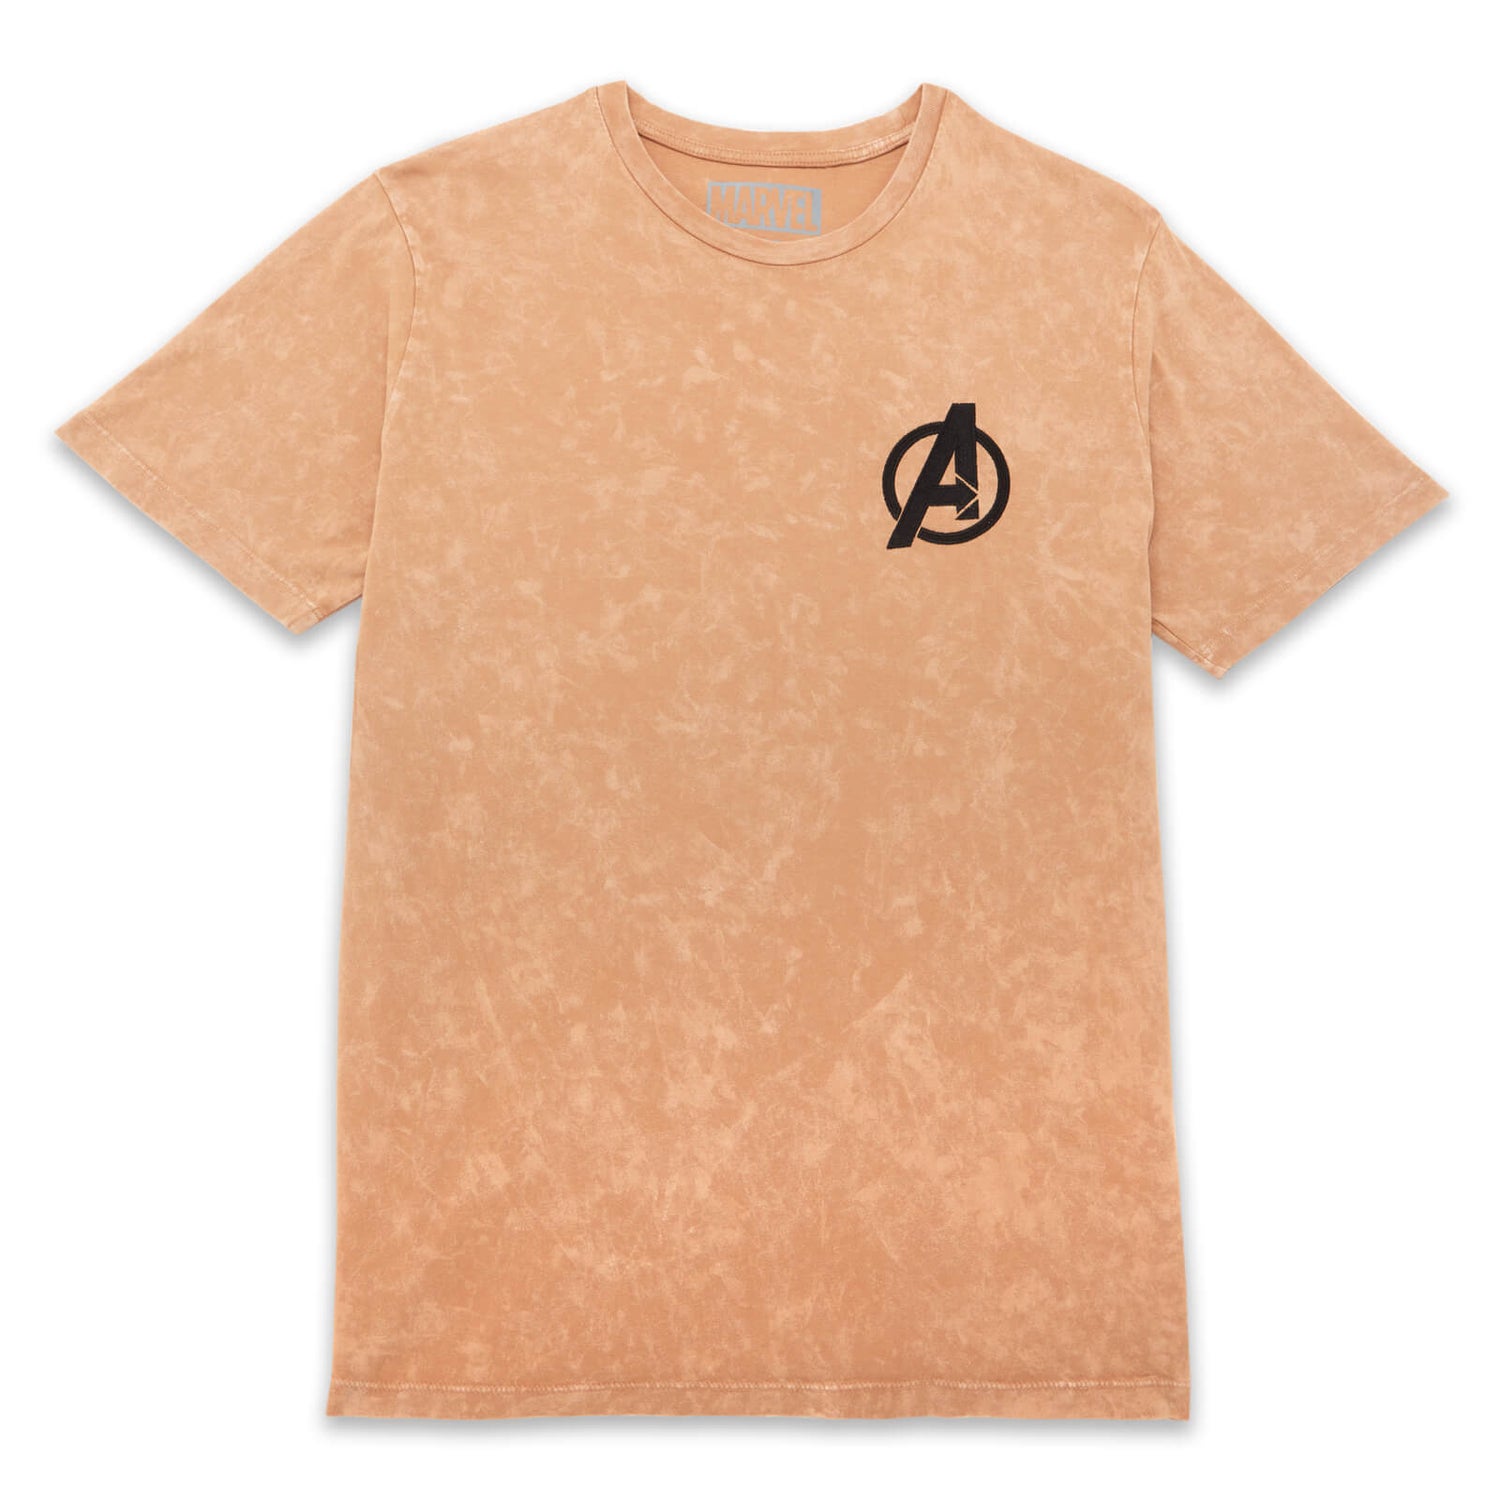 Camiseta unisex Avengers Logo - Lavado ácido bronceado